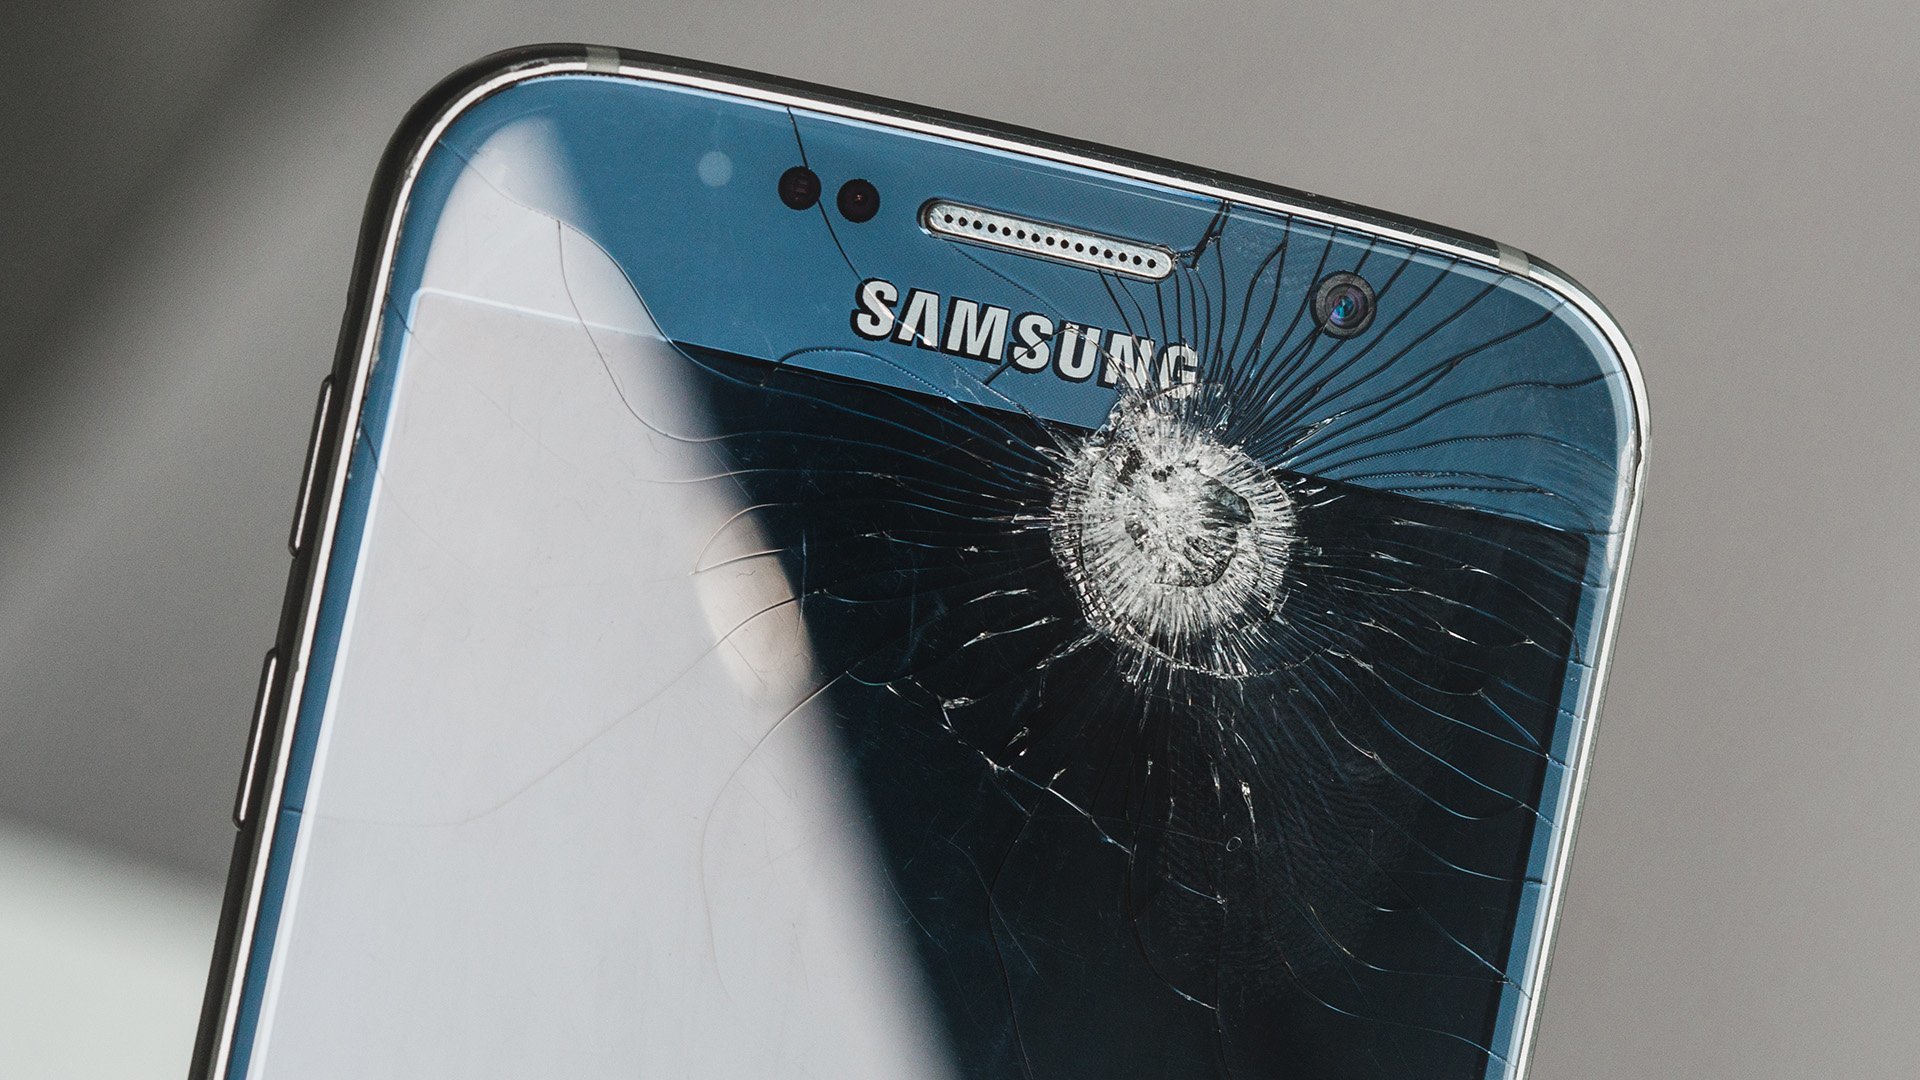 Ремонт телефонов infinix. Самсунг галакси а 7 разбити экран. Samsung s7 разбитый. Самсунг галакси с10 с разбитым экраном. Разбитый Samsung Galaxy s6.